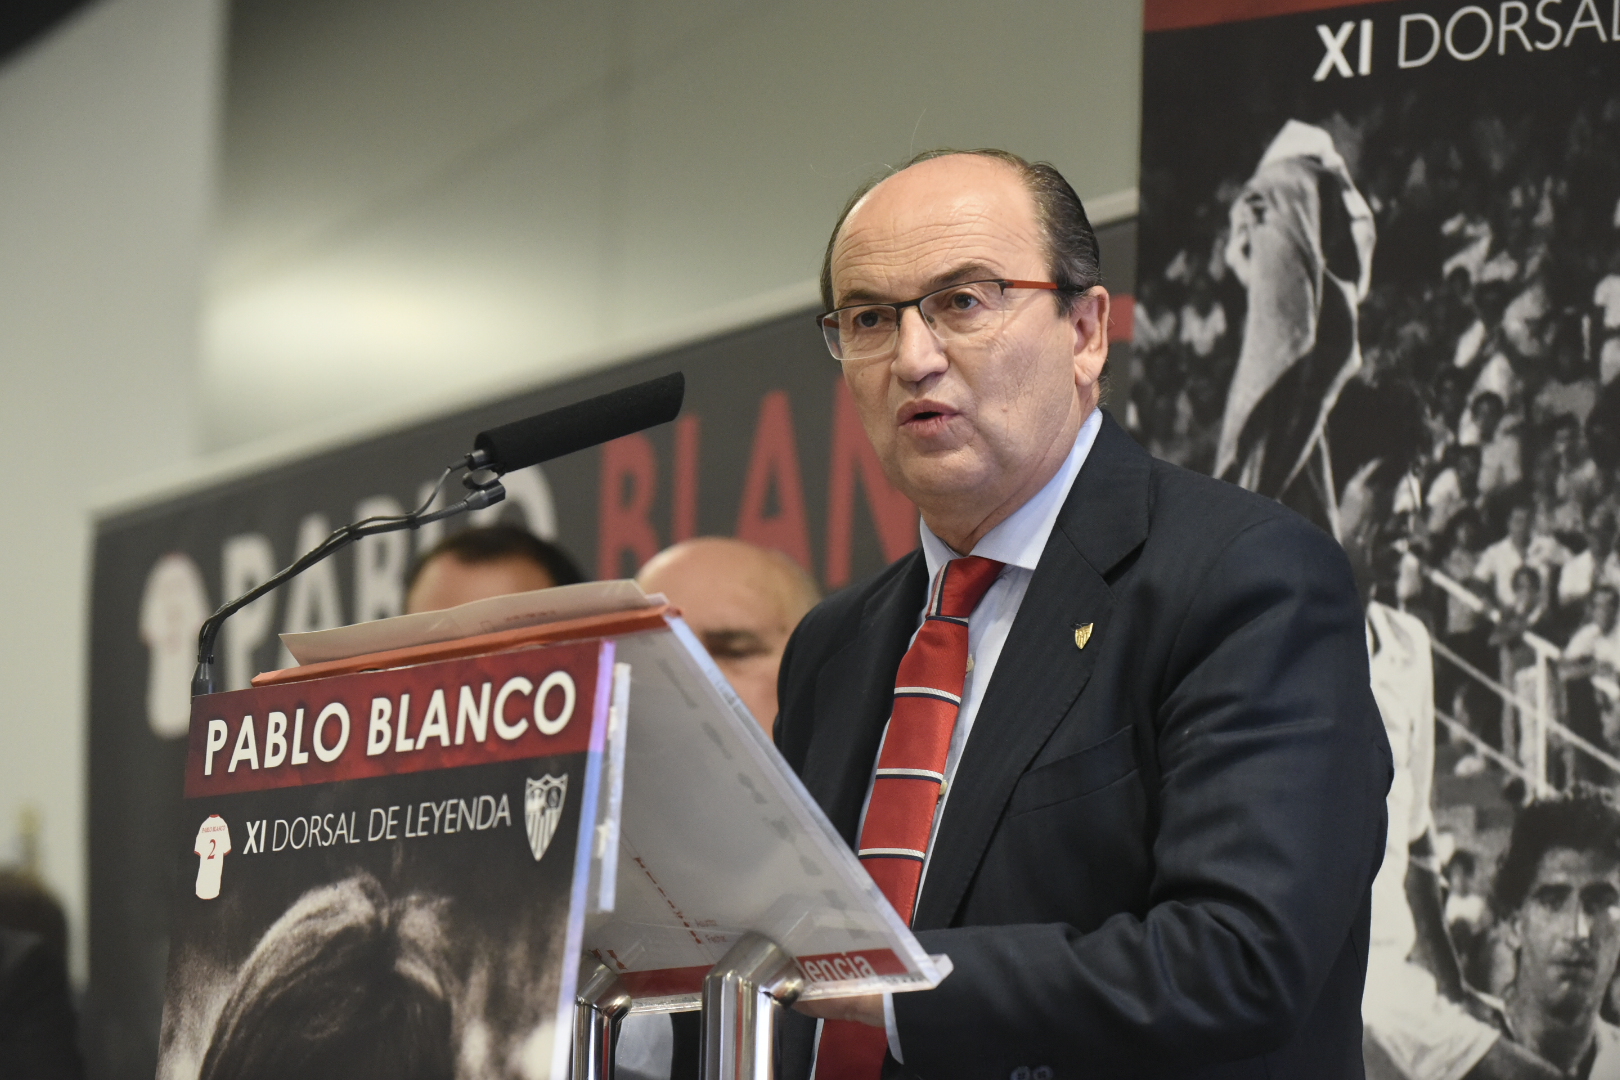 José Castro en la entrega del Dorsal de Leyenda a Pablo Blanco